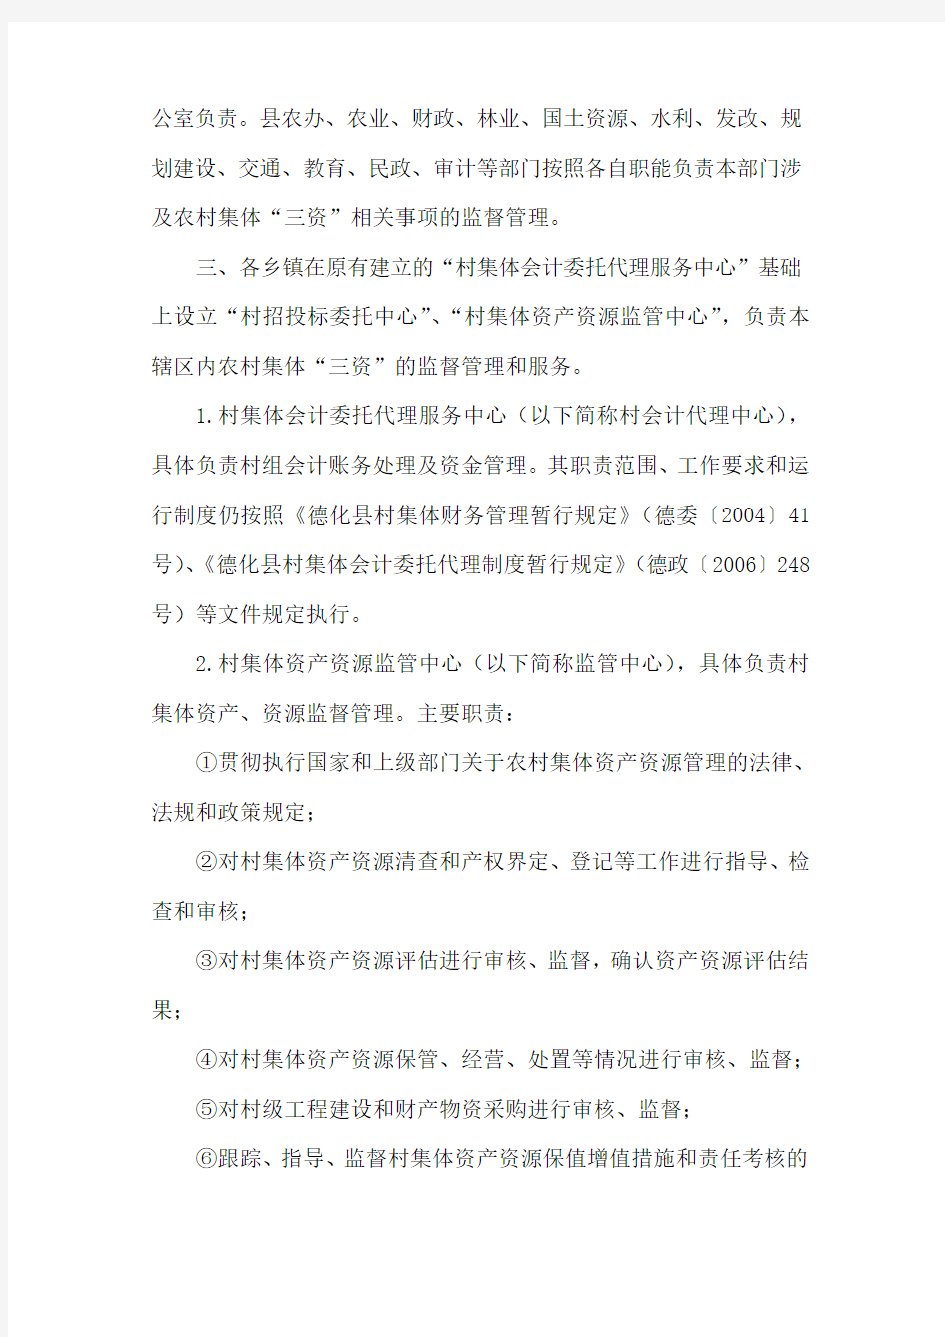 德化县农村集体资金资产资源管理规定(暂行)